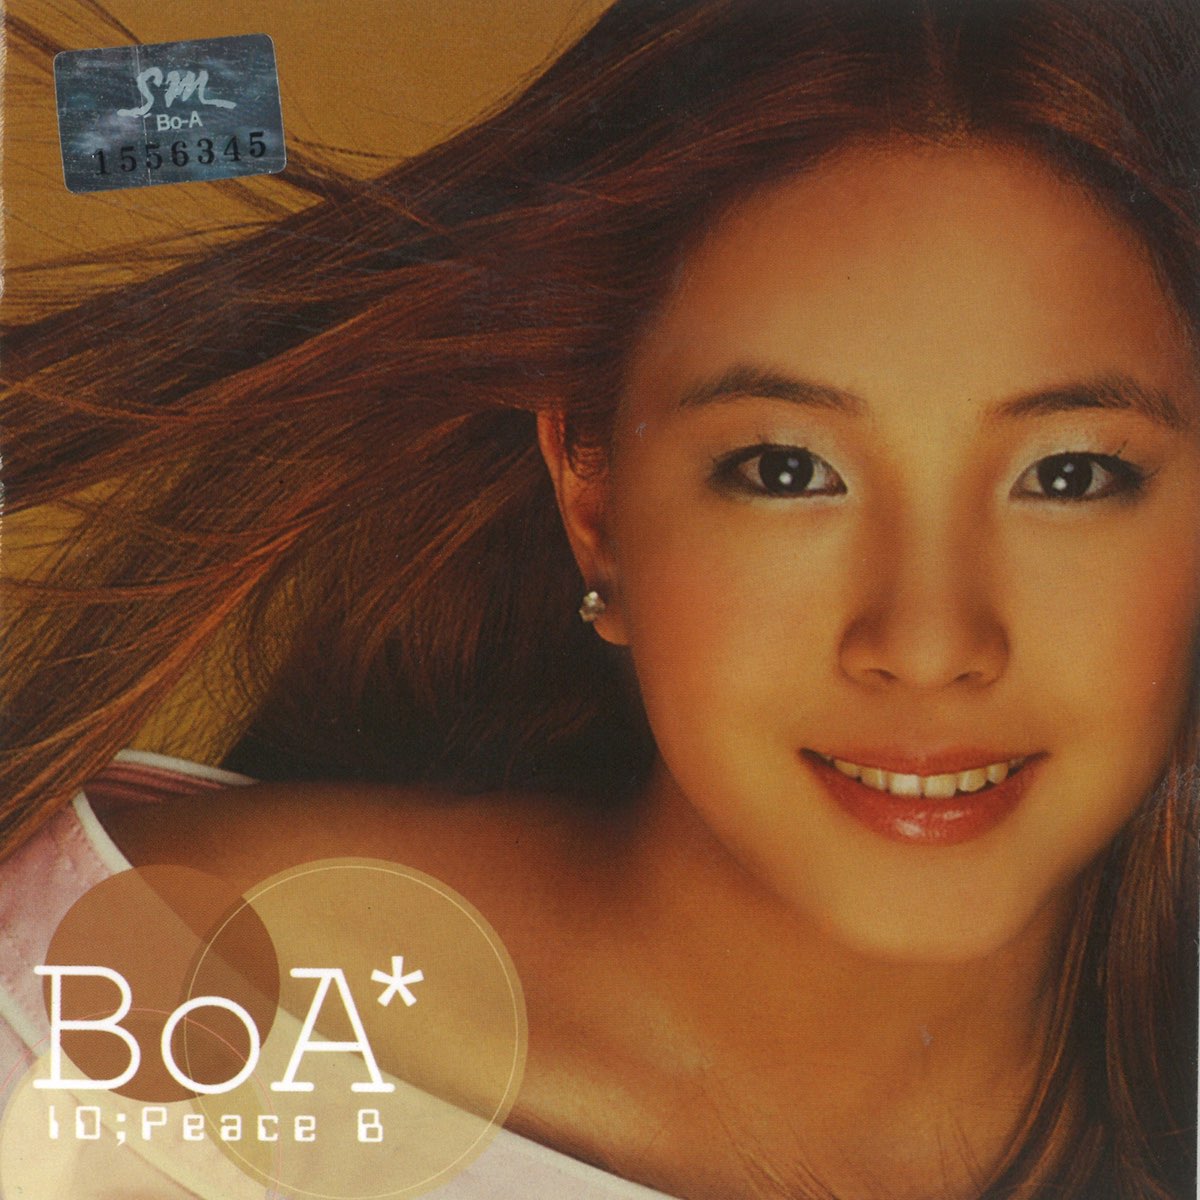 BoA ID;Peace B cover artwork